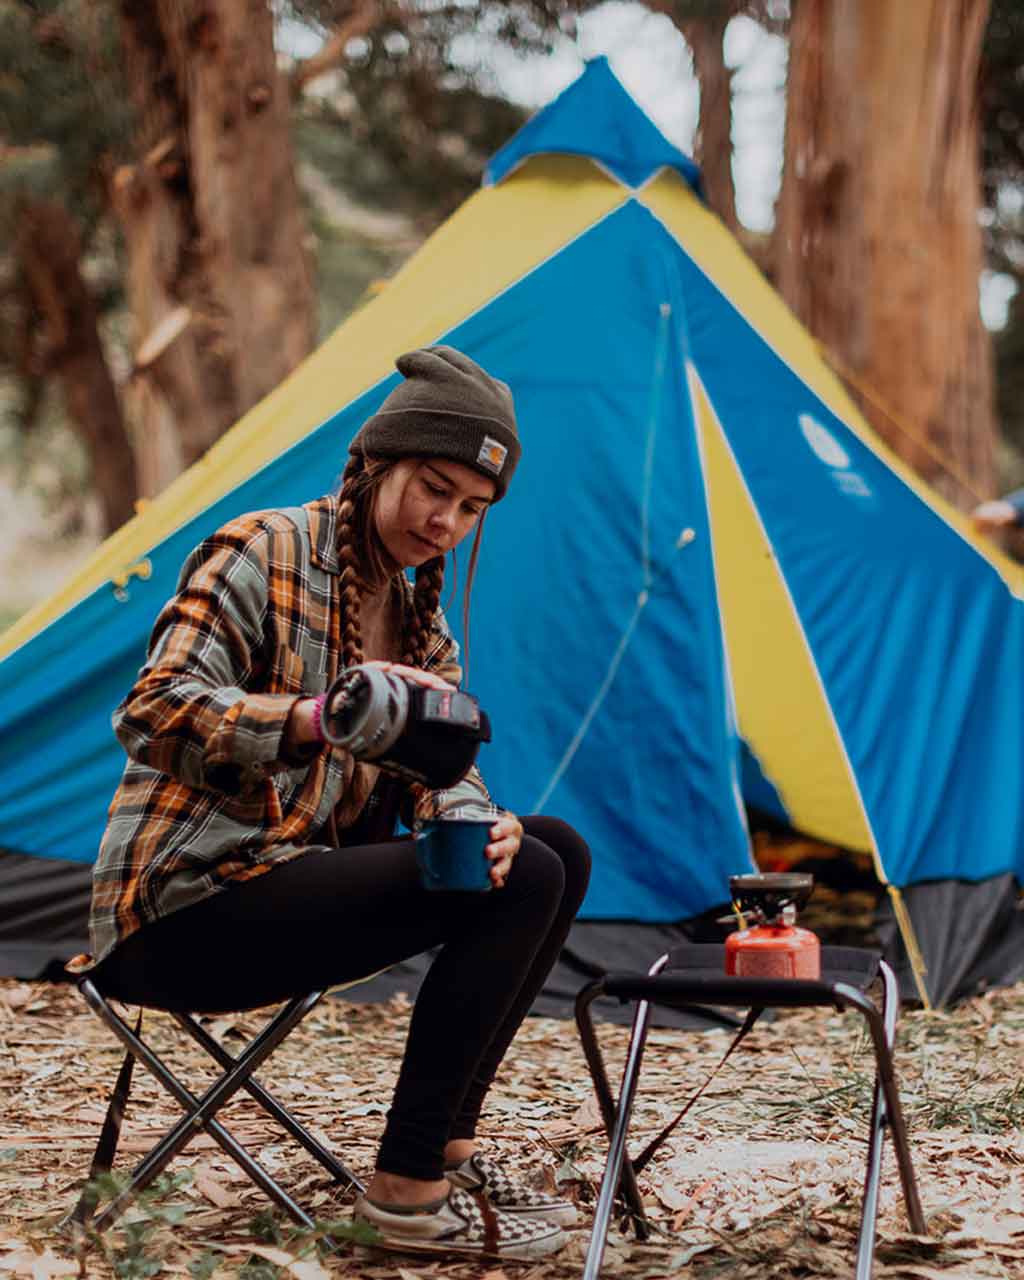 Sierra Designs UK  Backpacking Rucksacks, Tents & Sleeping Bags